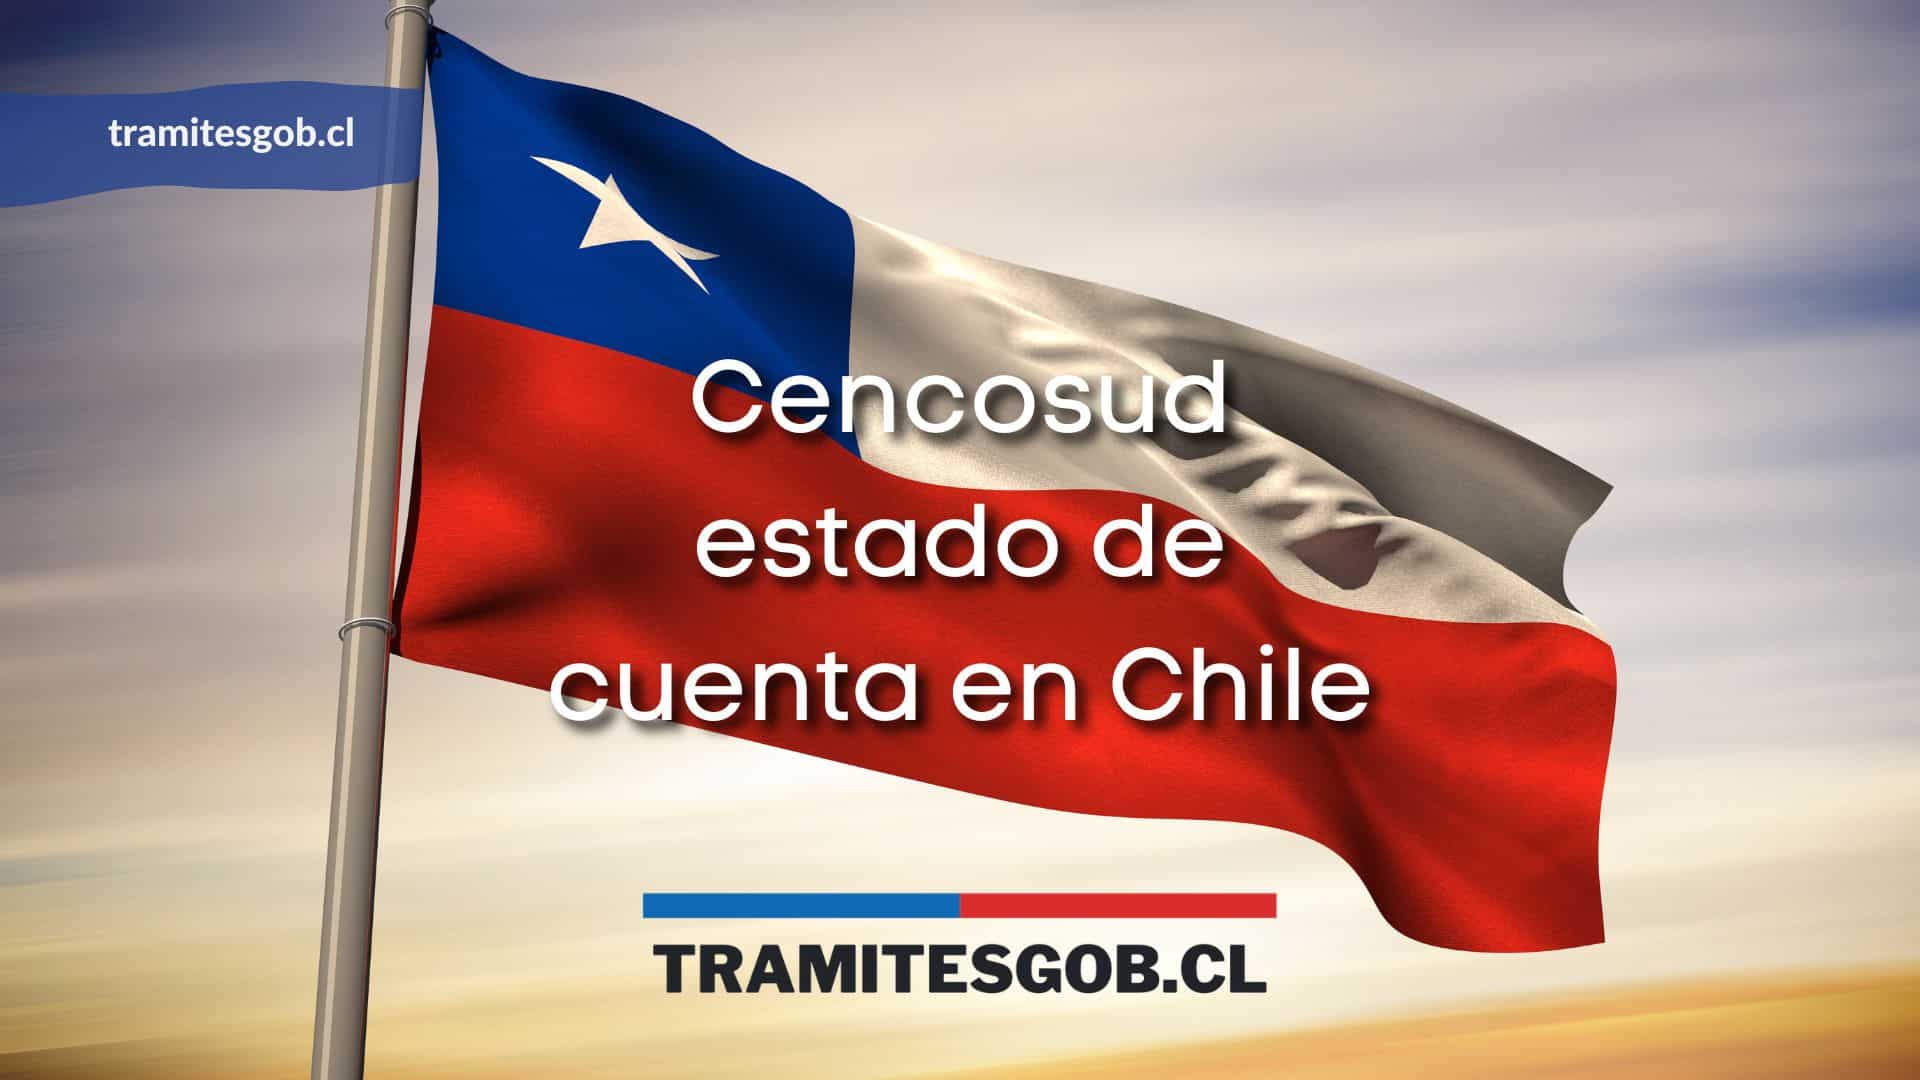 Cencosud estado de cuenta en Chile